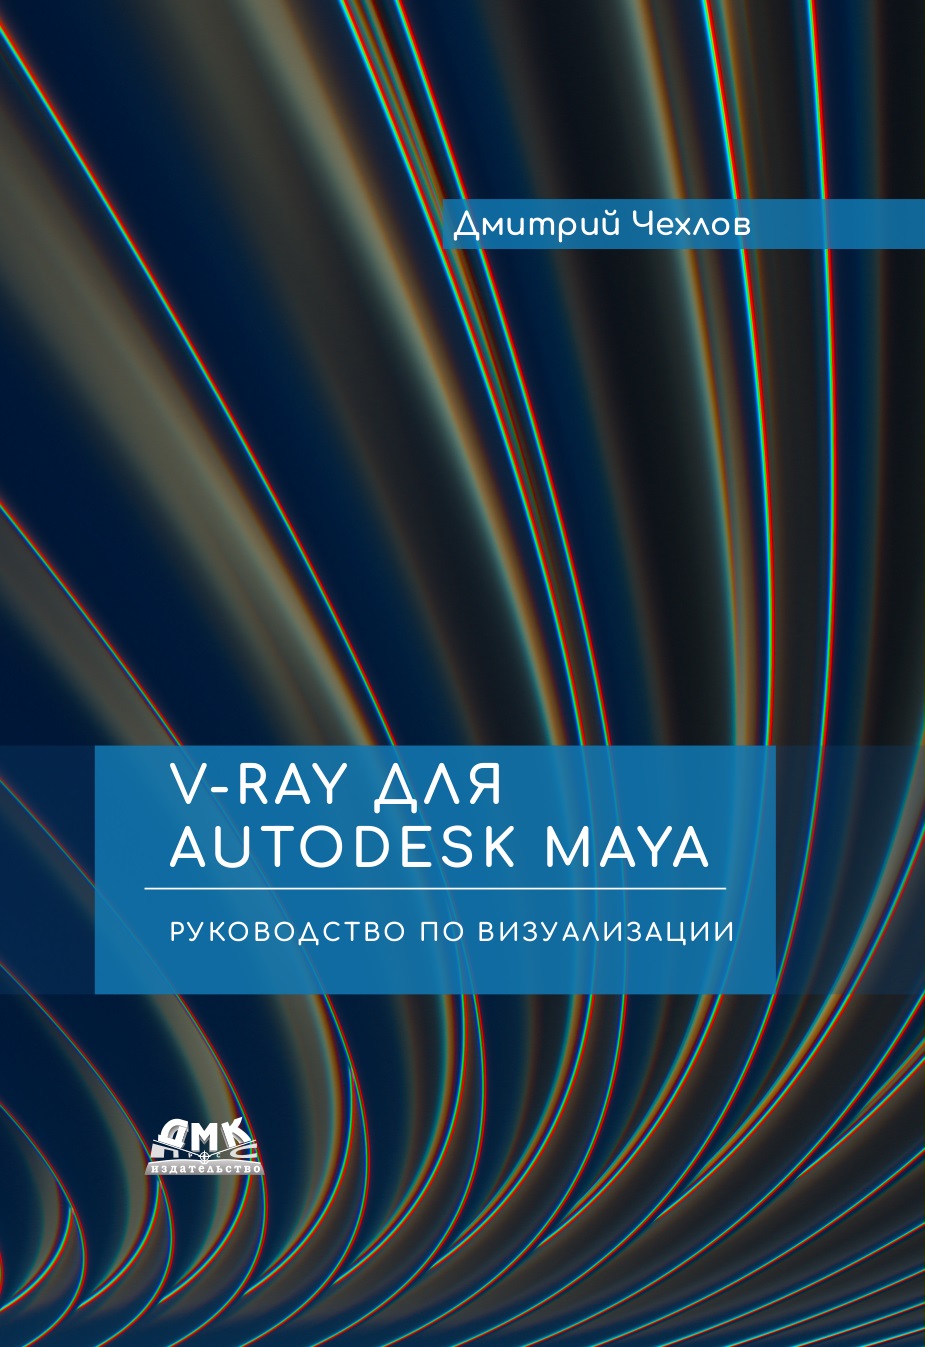 V-Ray  Autodesk Maya